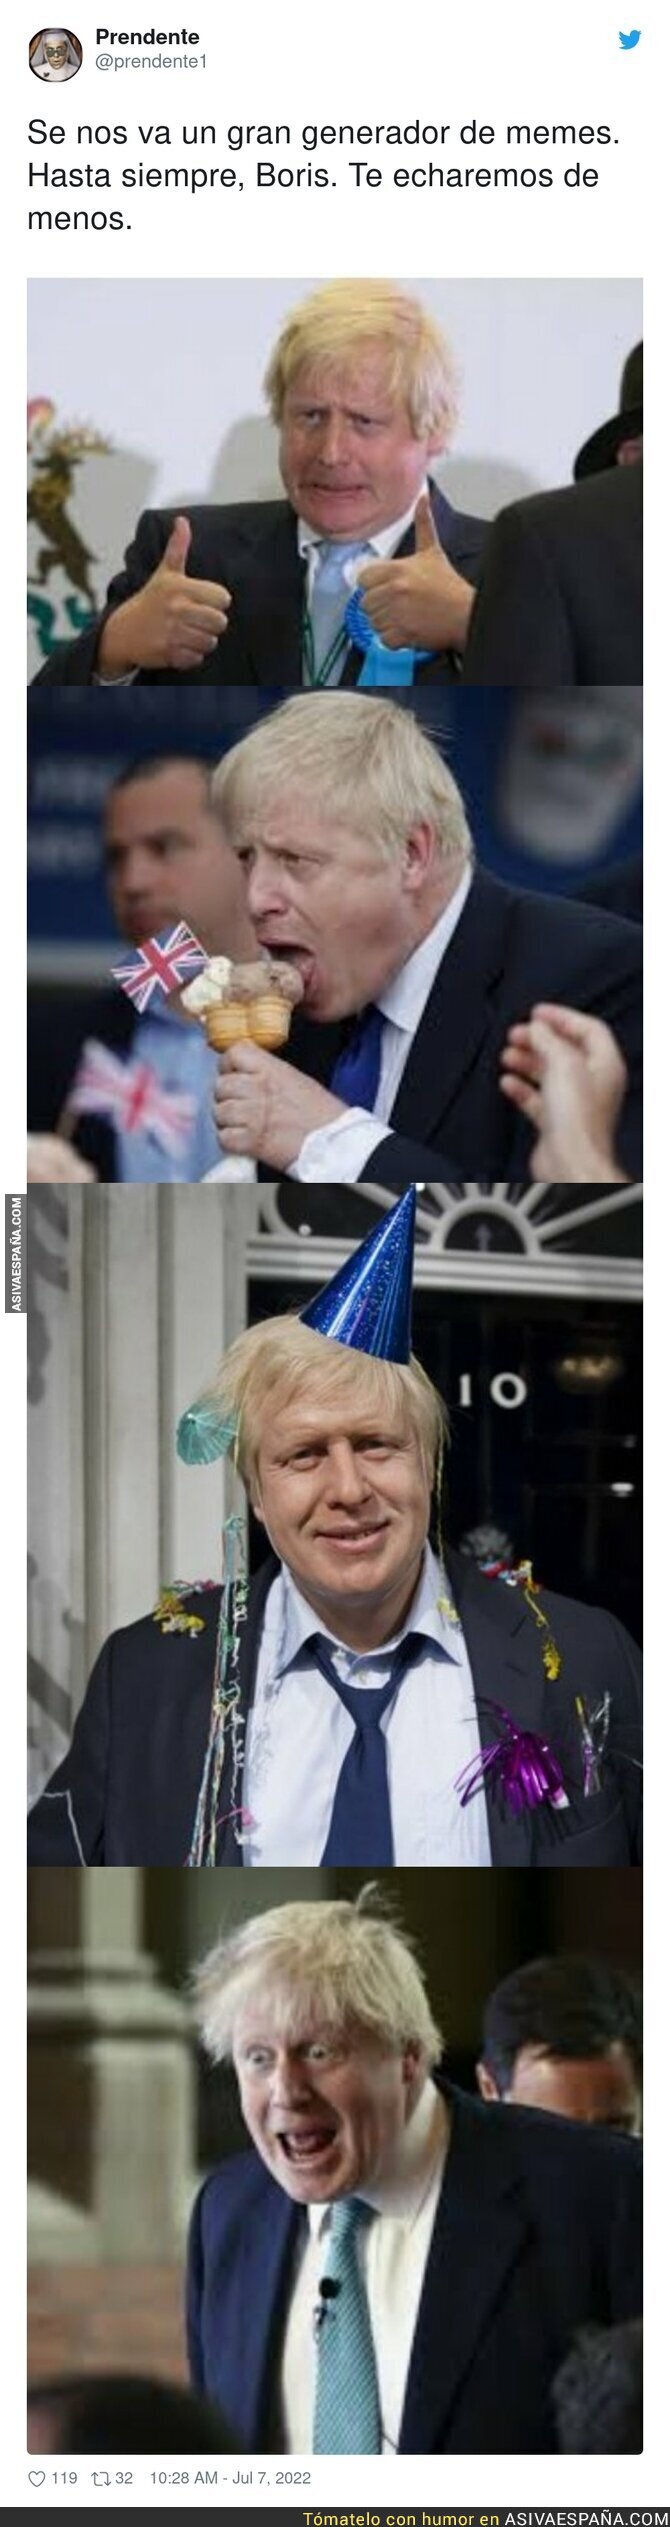 Gracias por tanto Boris